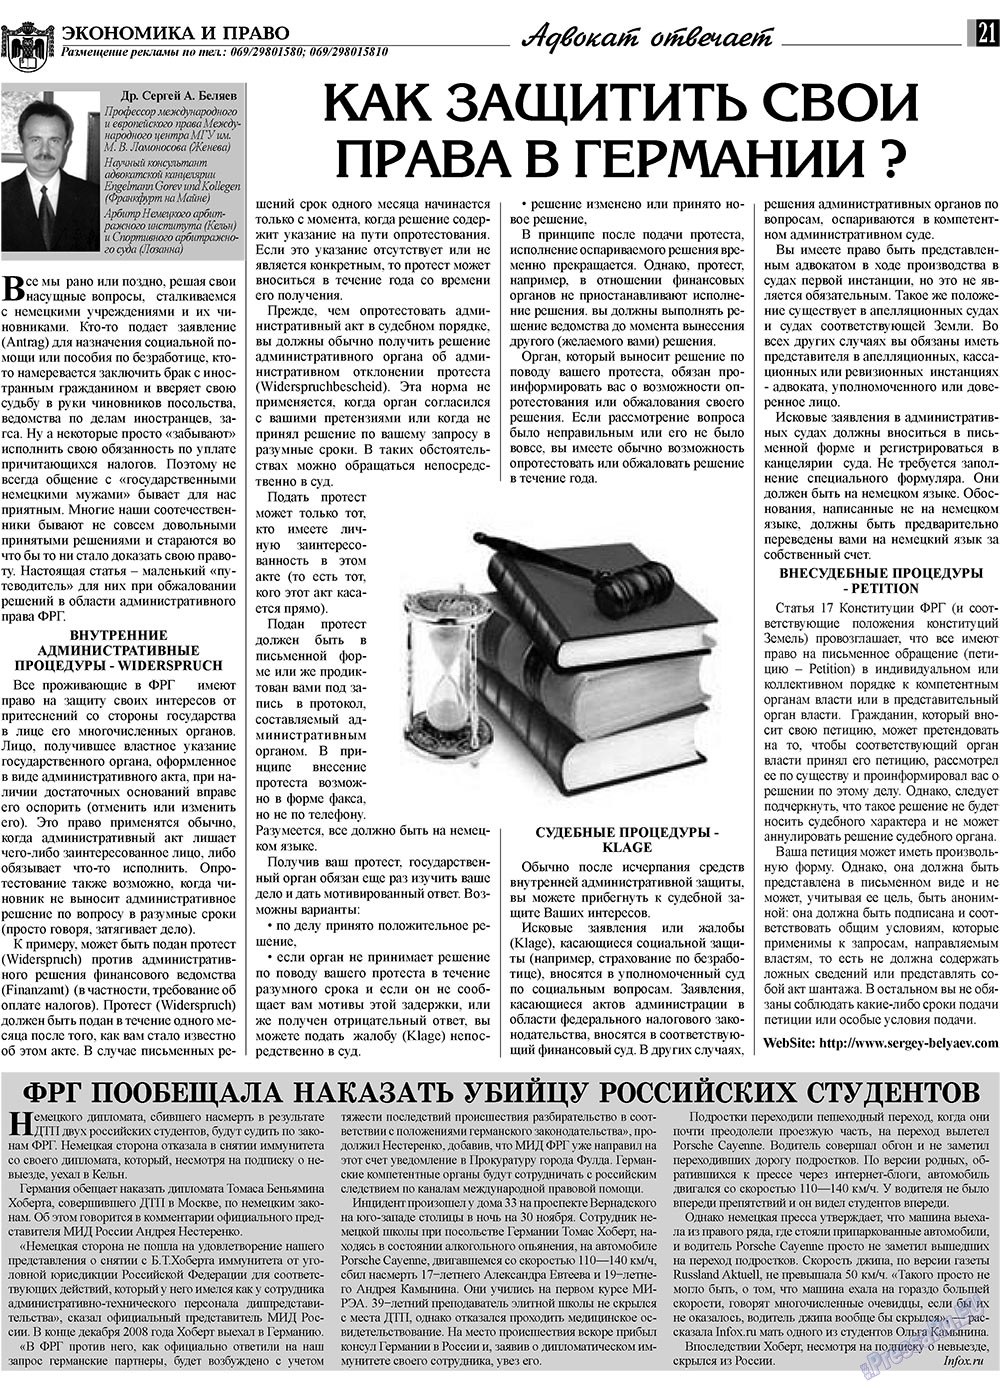 Экономика и право, газета. 2009 №2 стр.21